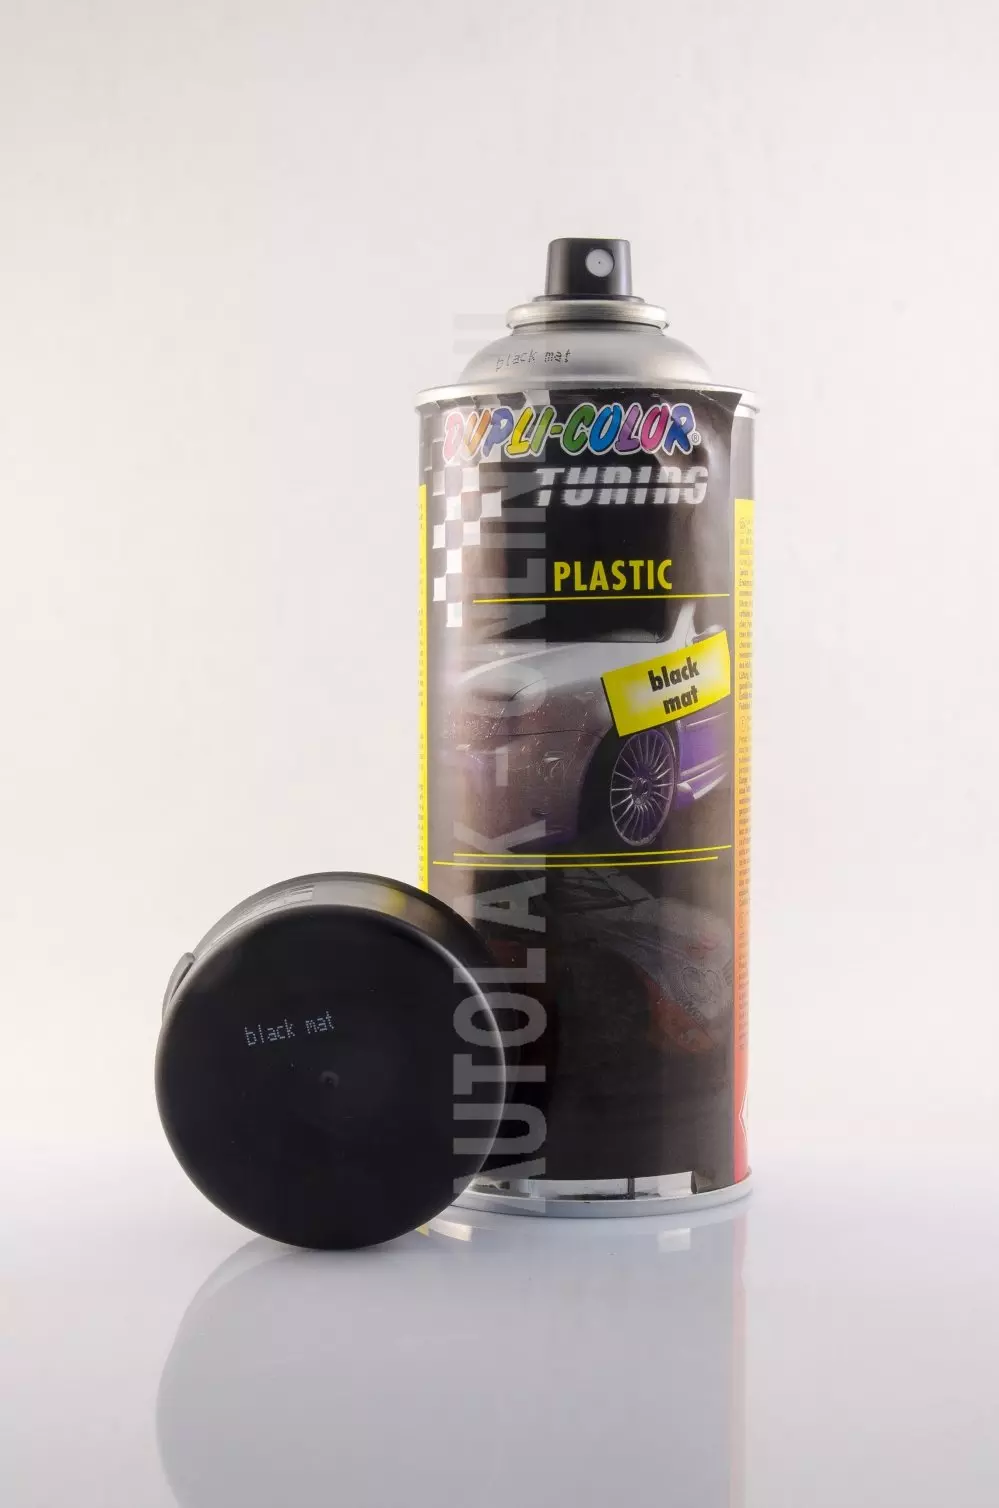 Speciale toepassingen - Plastic-spray-mat-zwart-autolak-online